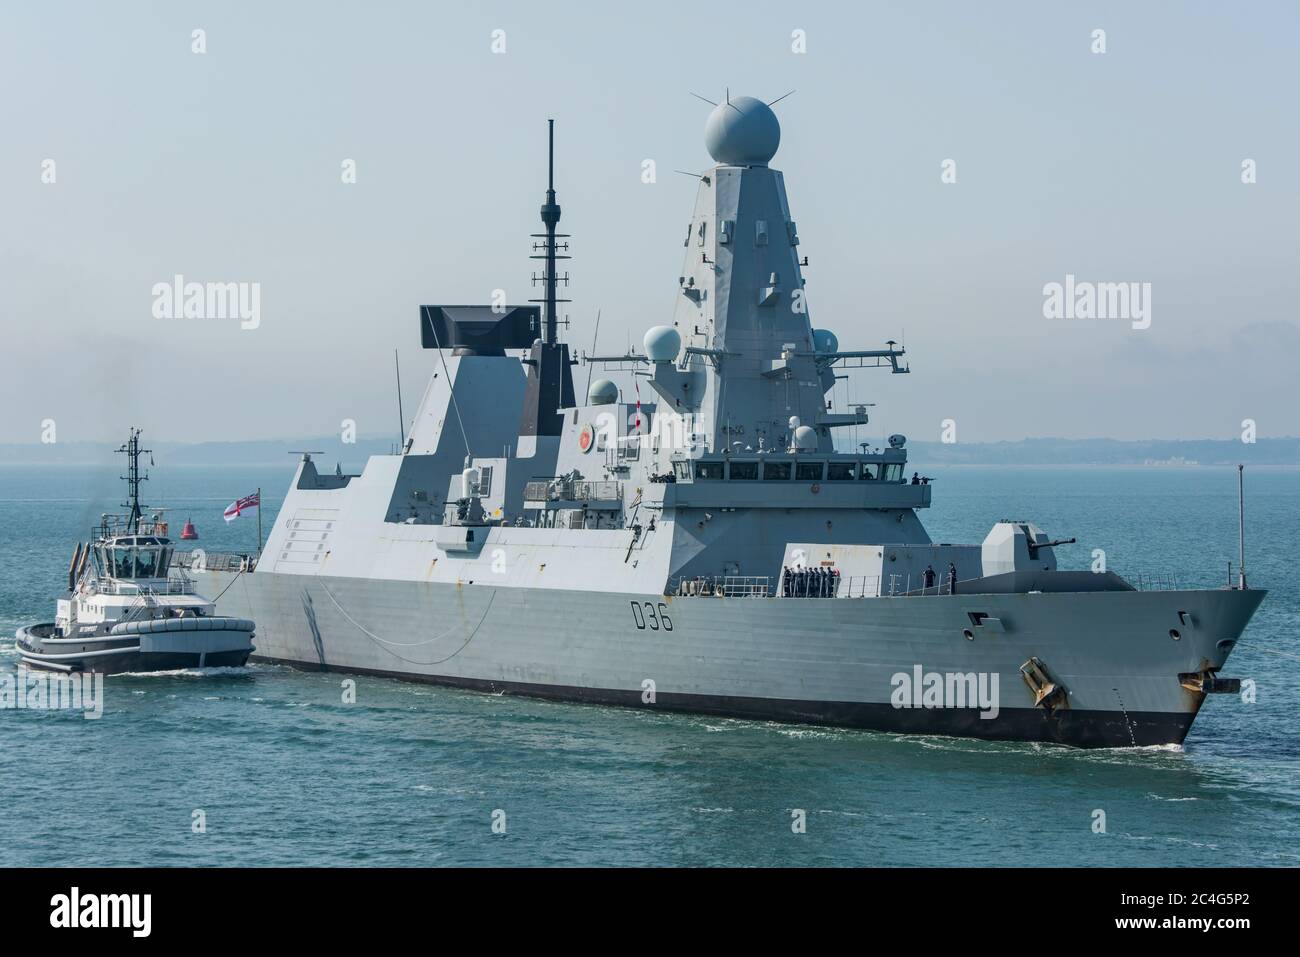 Der Royal Navy Typ 45 Luftverteidigungszerstörer HMS Defender (D36) kehrt am 26. Juni 2020 nach einer Zeit von Seeversuchen in britischen Gewässern nach Portsmouth, Großbritannien zurück. Stockfoto